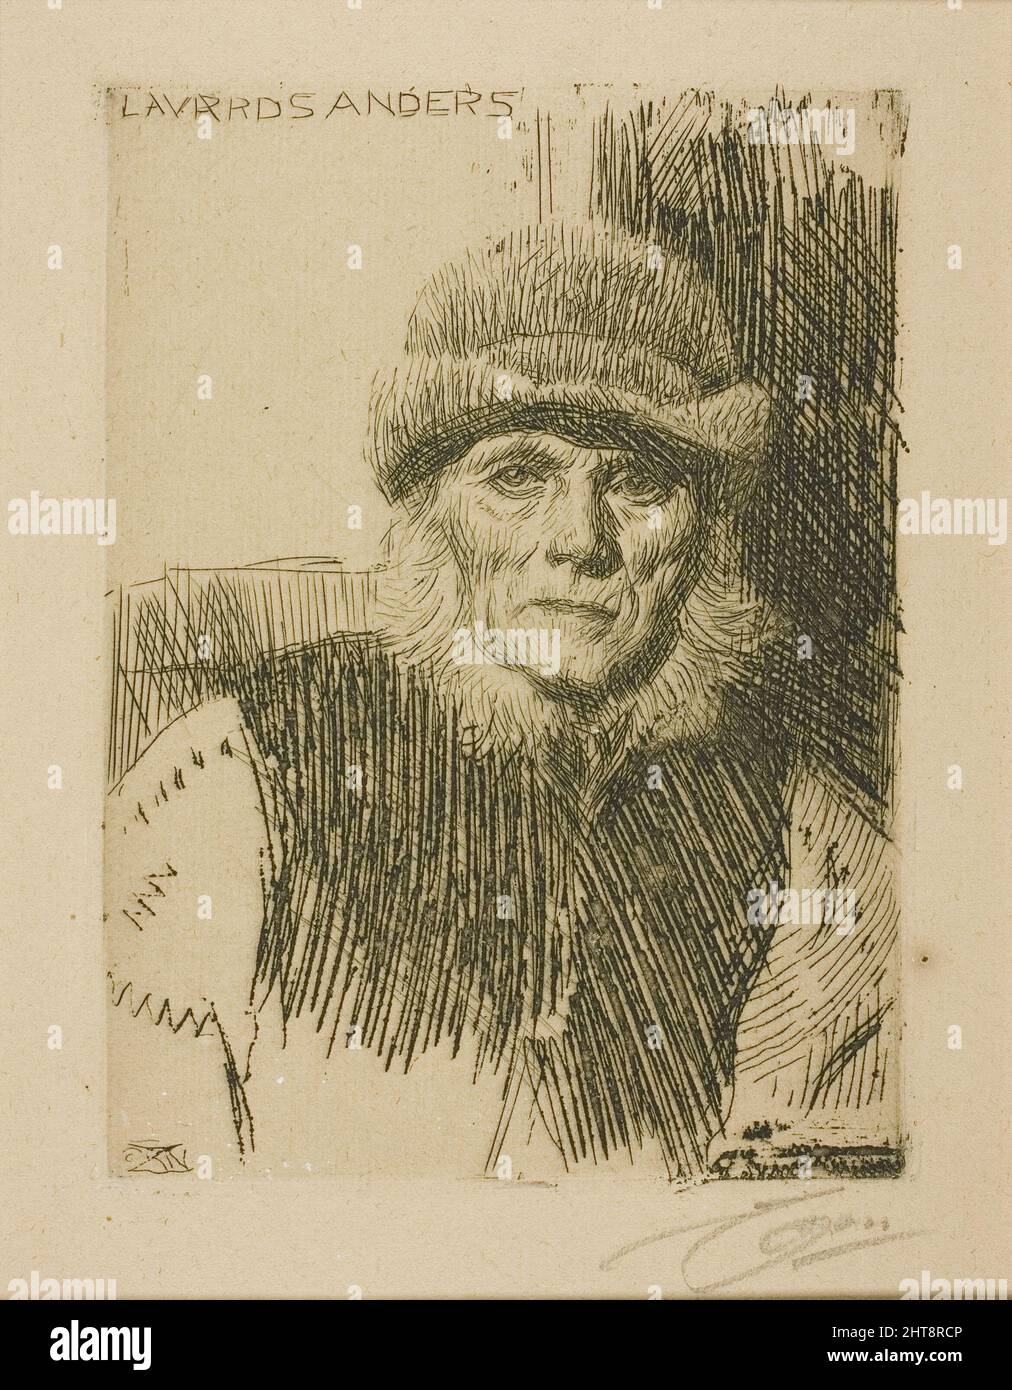 Dalecarlian Peasant (Lavards Anders), 1919. Stock Photo